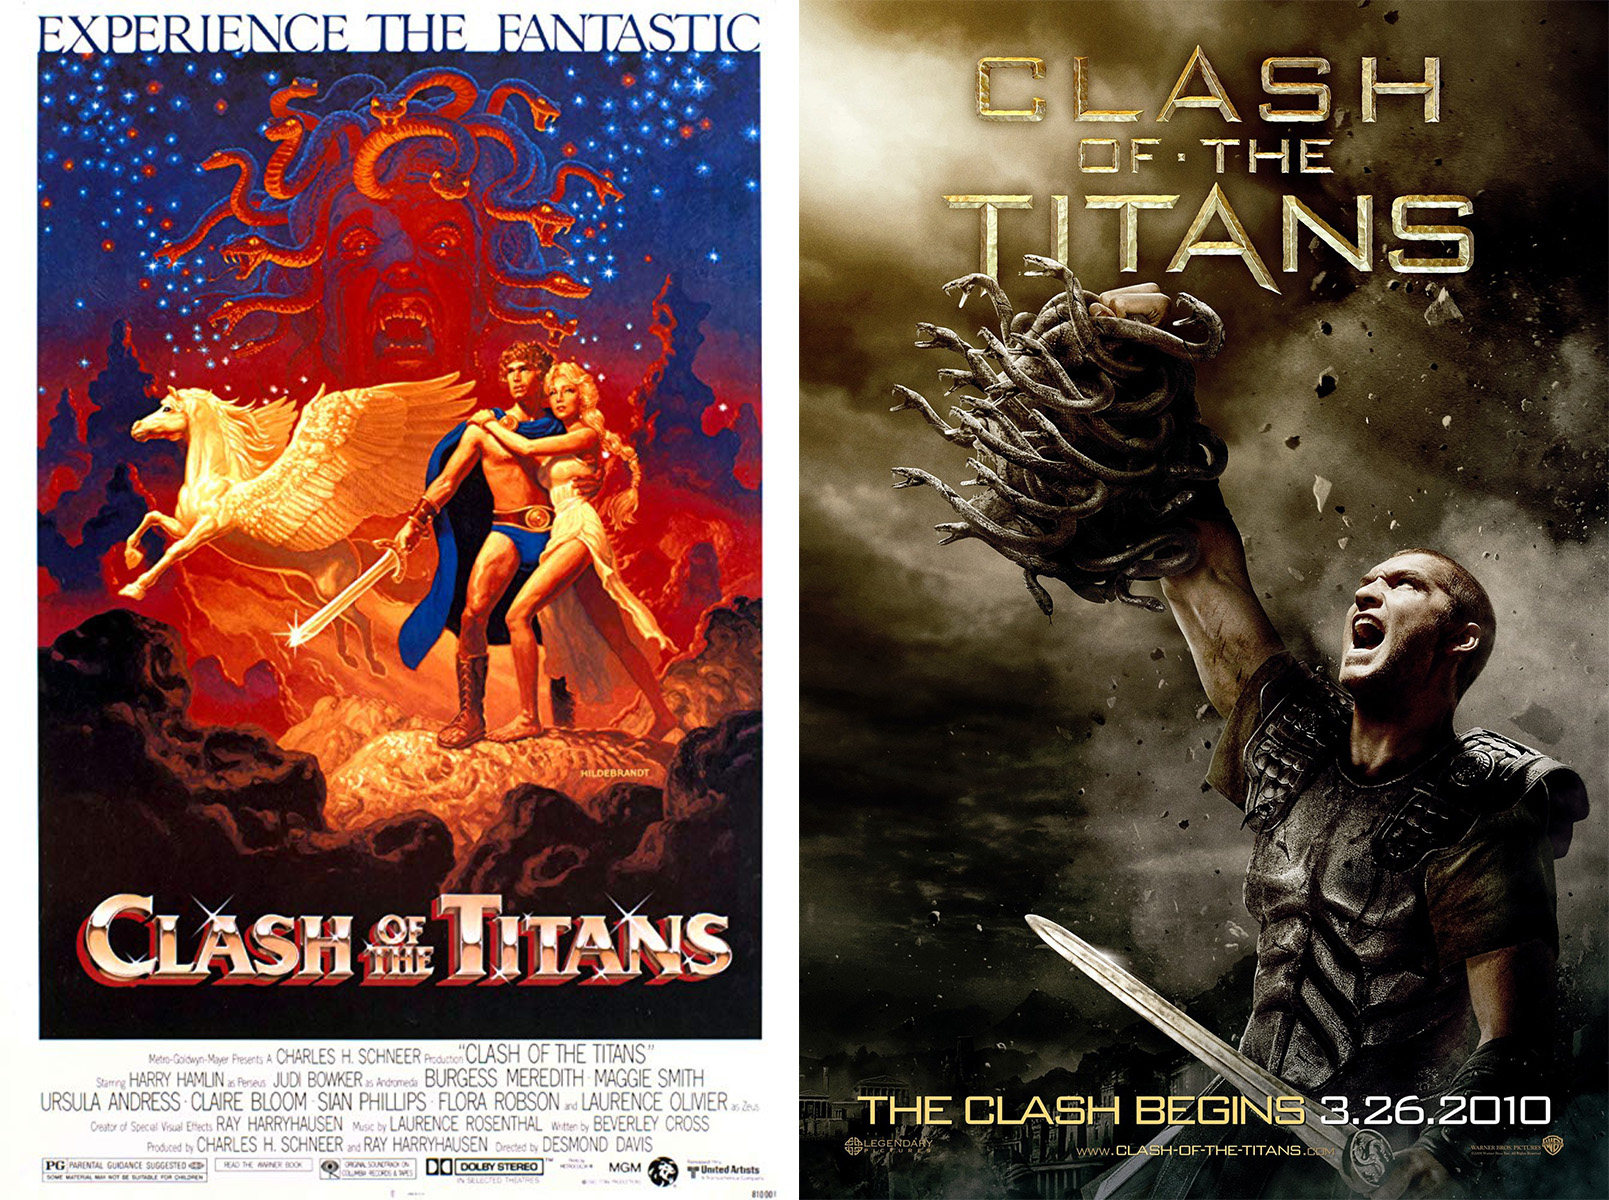 Clash of the Titans (1981), dir. Desmond Davis